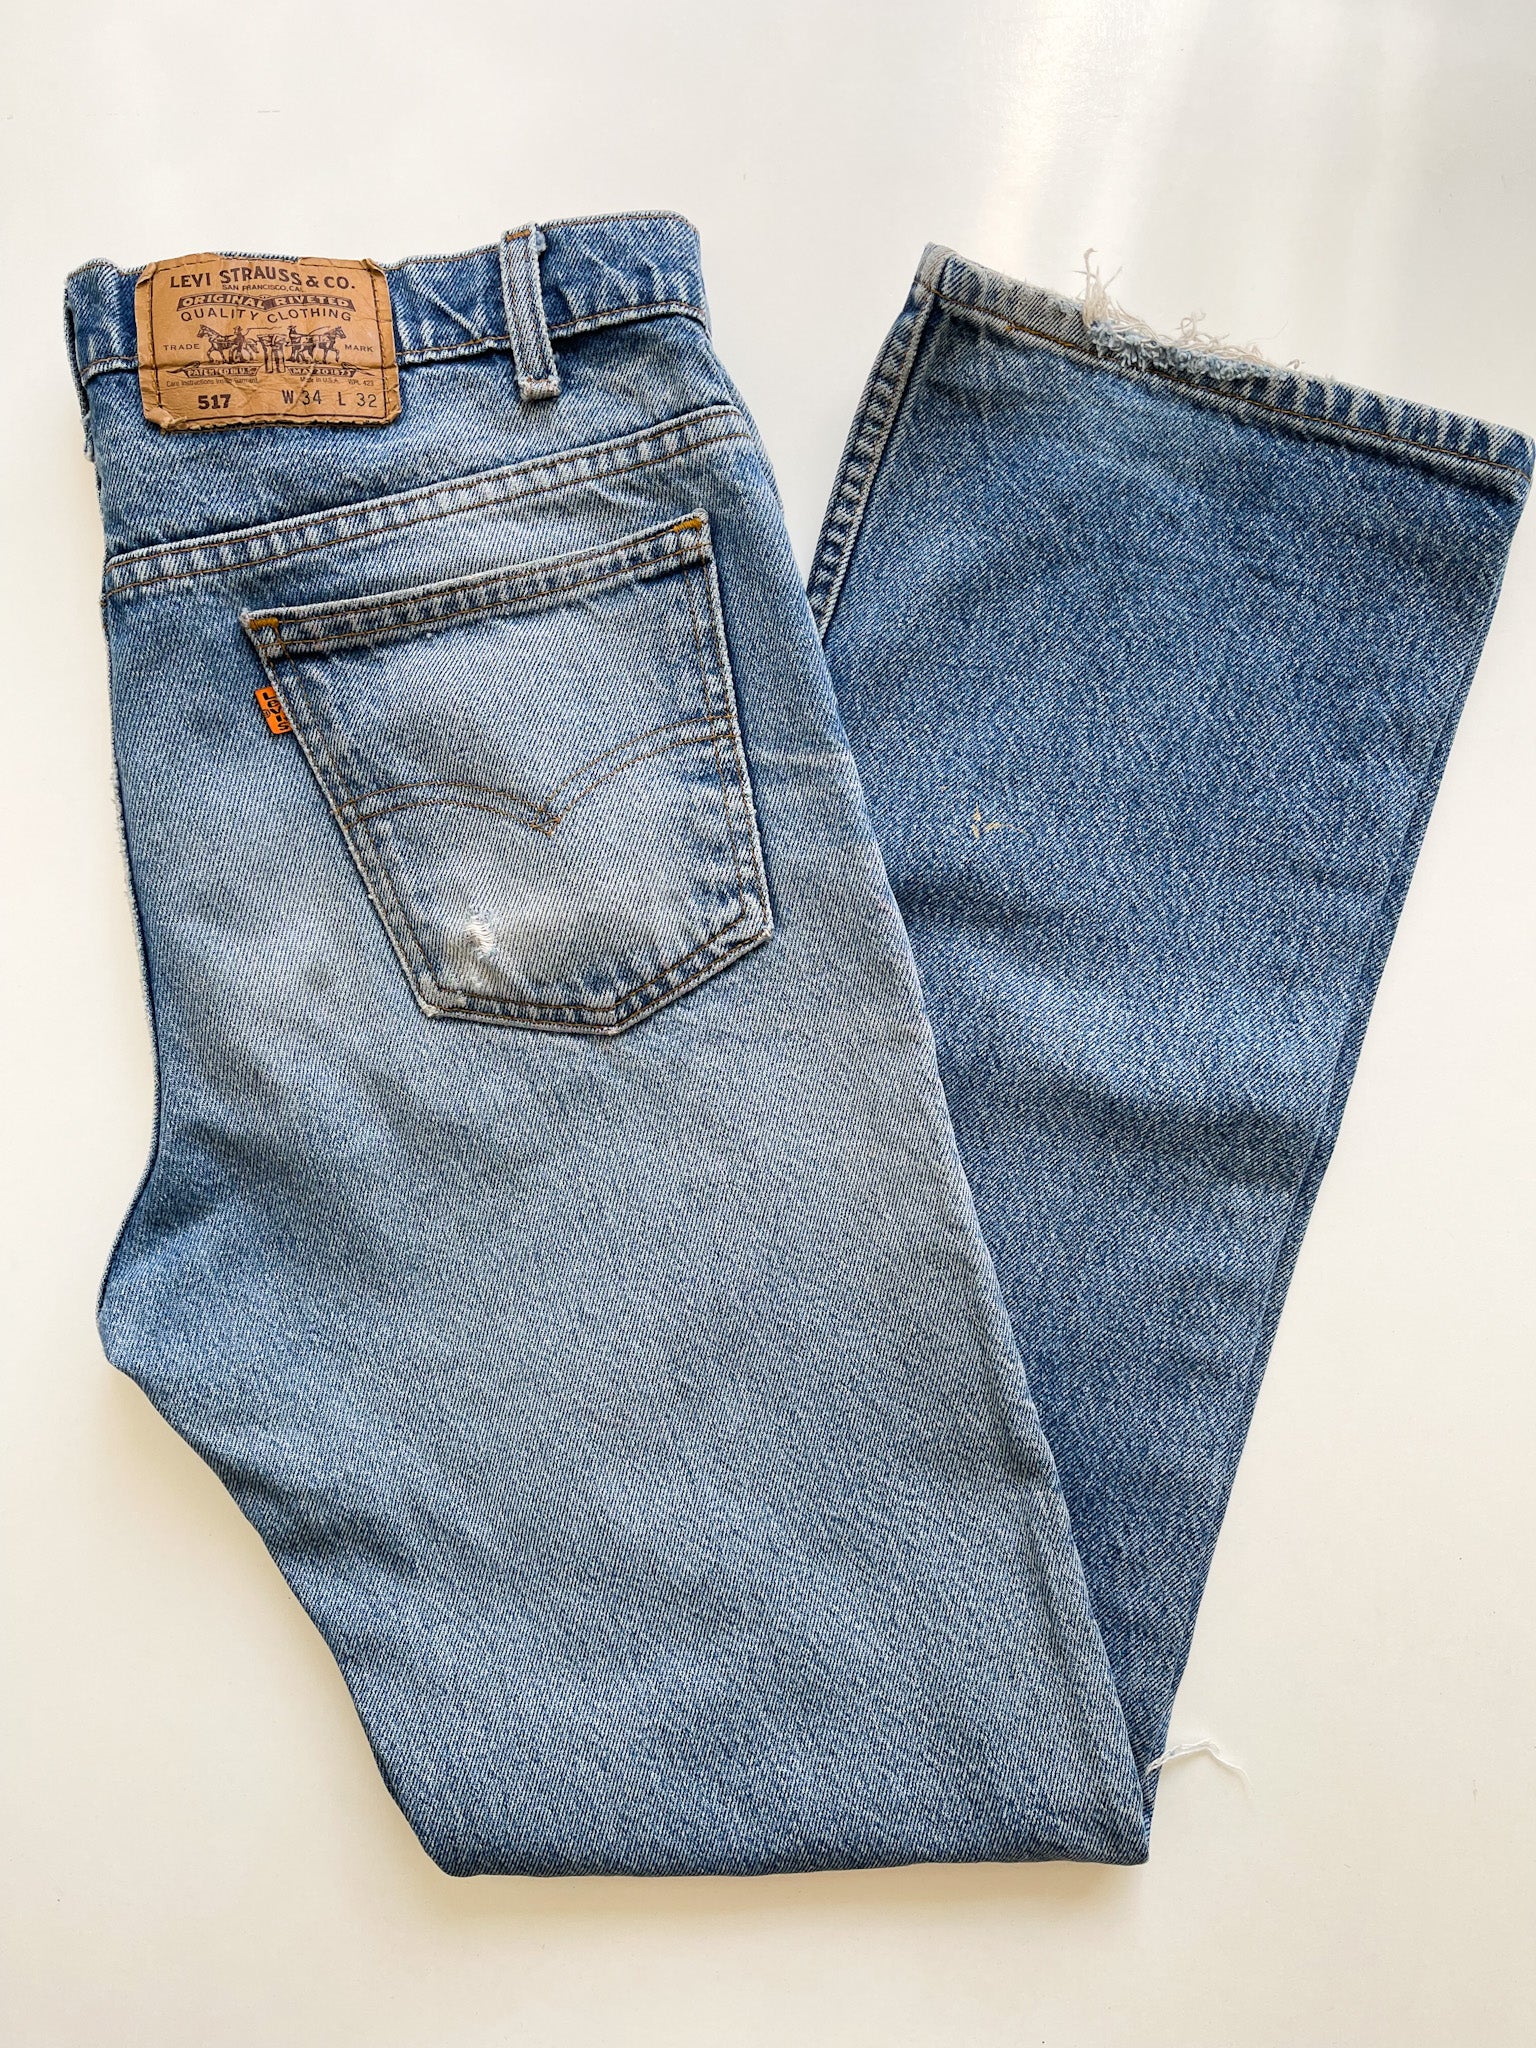 Vintage Levi's 517 Orange Tab Jeans with Distressed Knees - 33